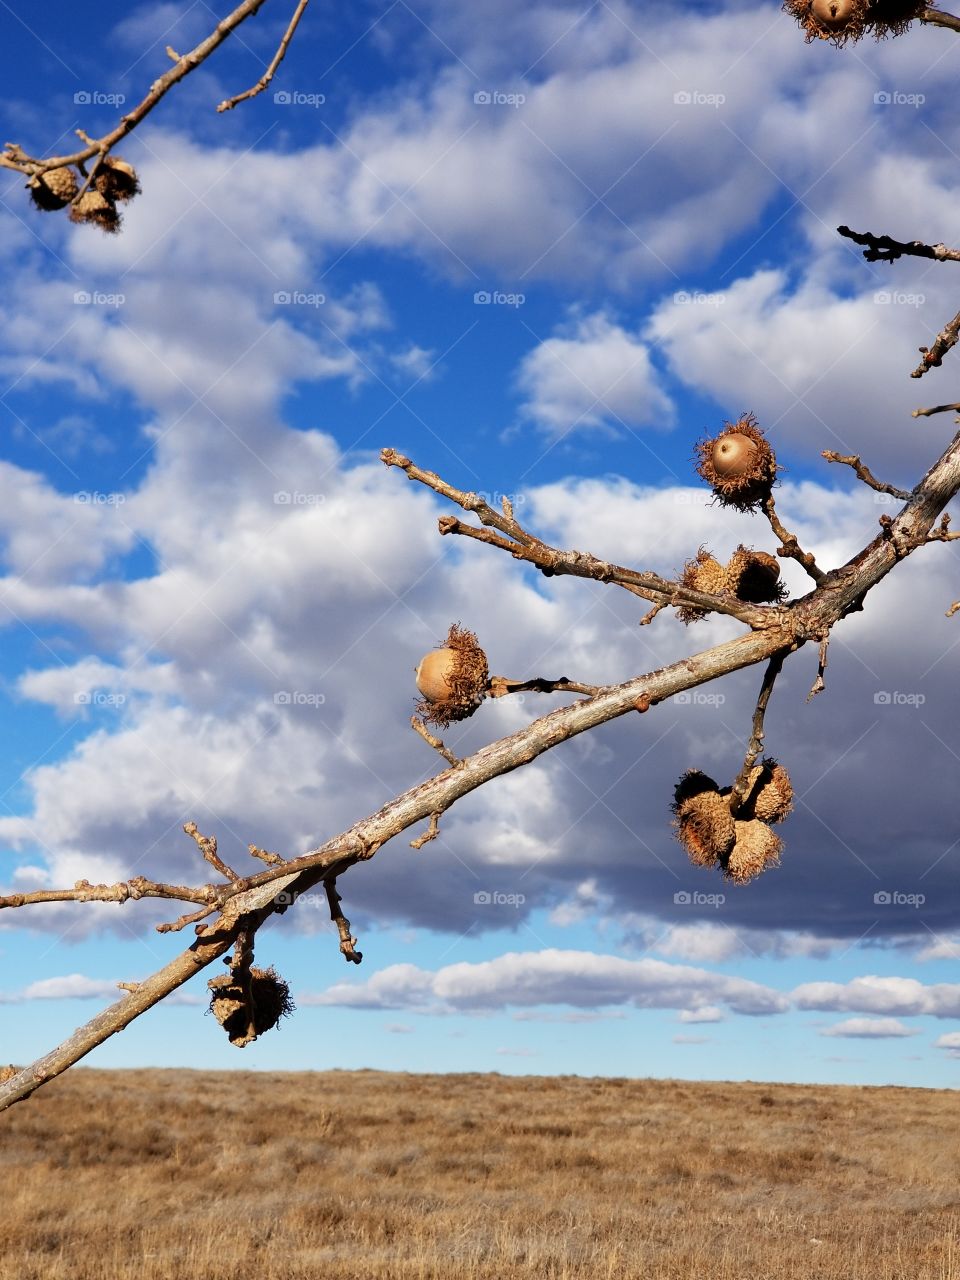 acorn tree against cloudy blue sky